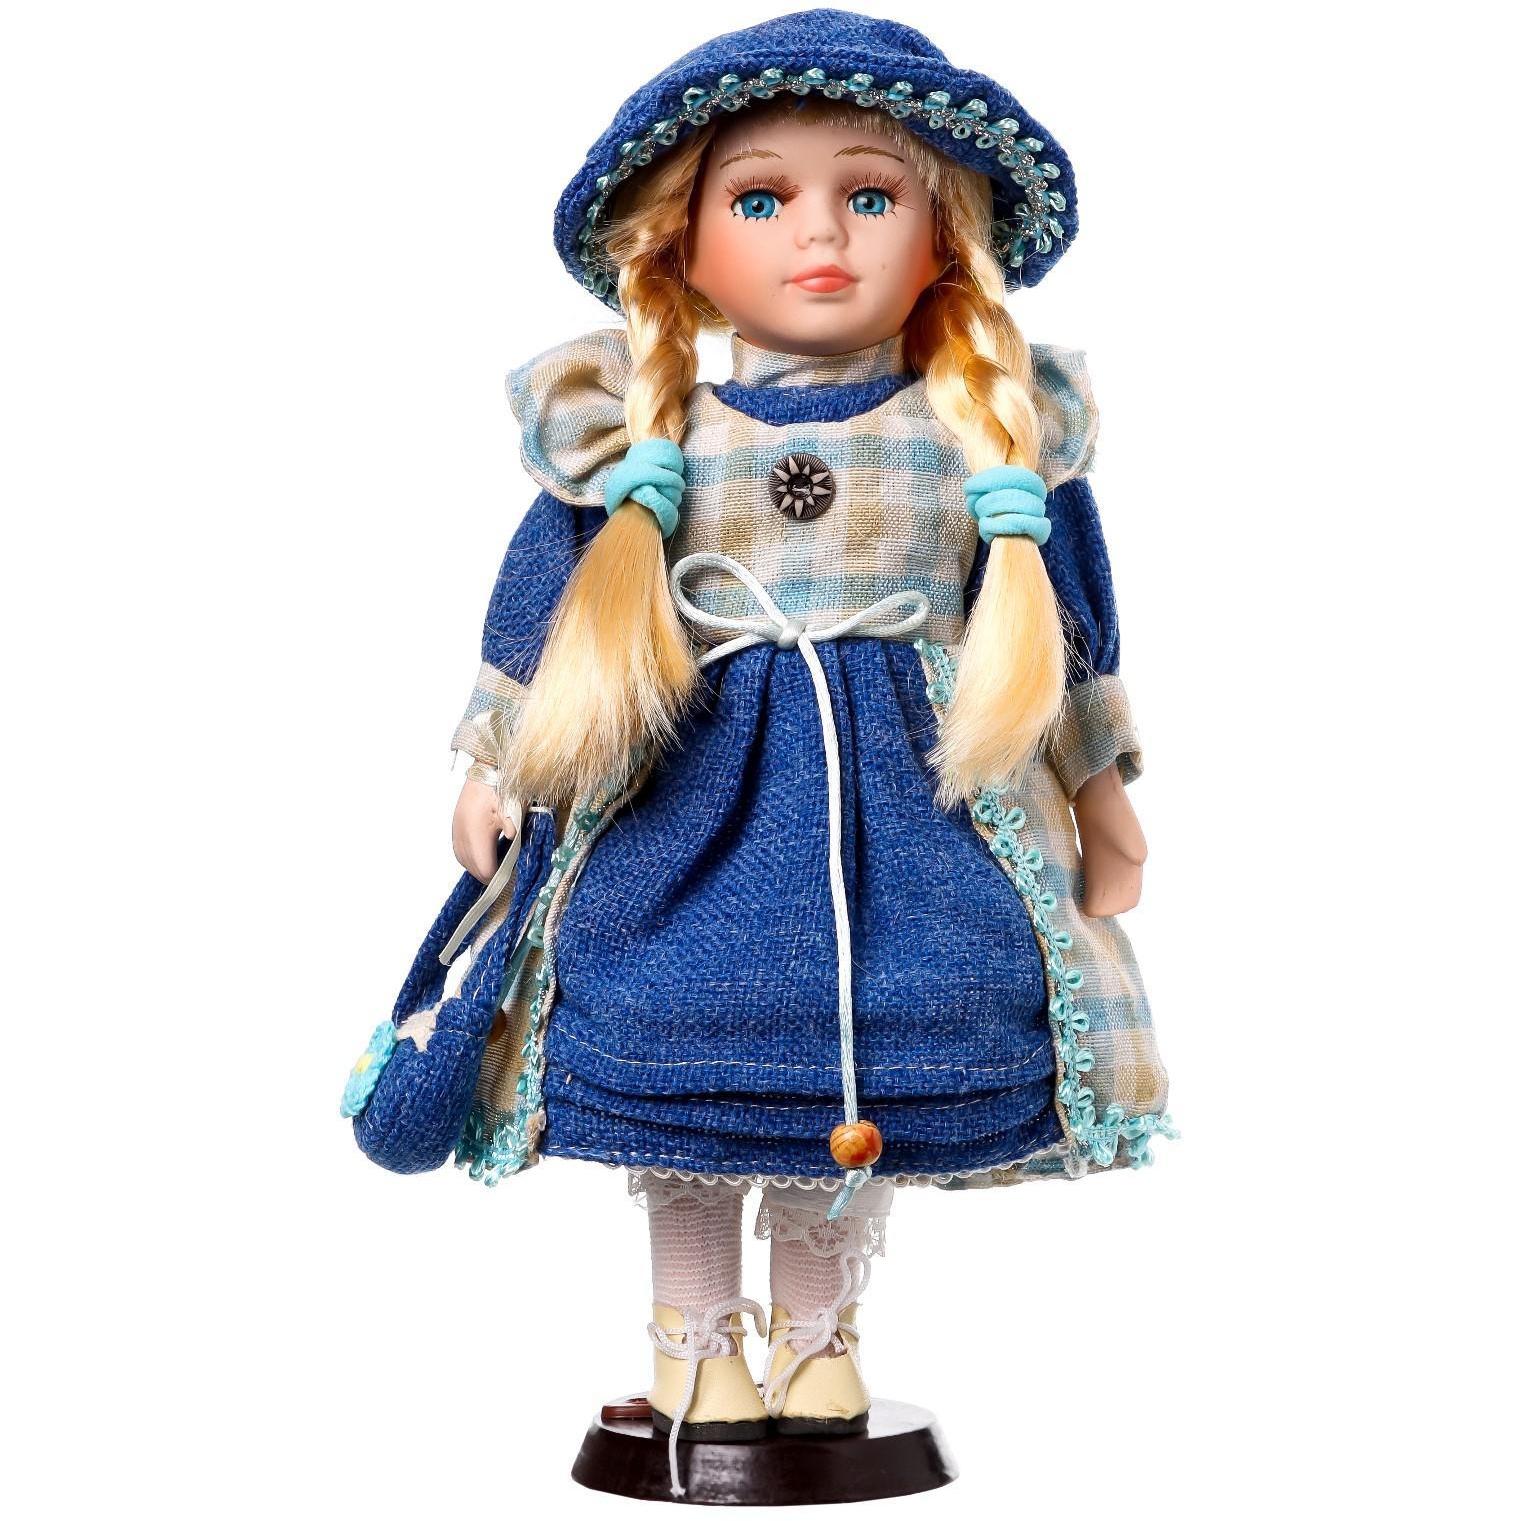 Кукла коллекционная керамика "Алиса в джинсовом платье с клетчатой накидкой" (30 см)